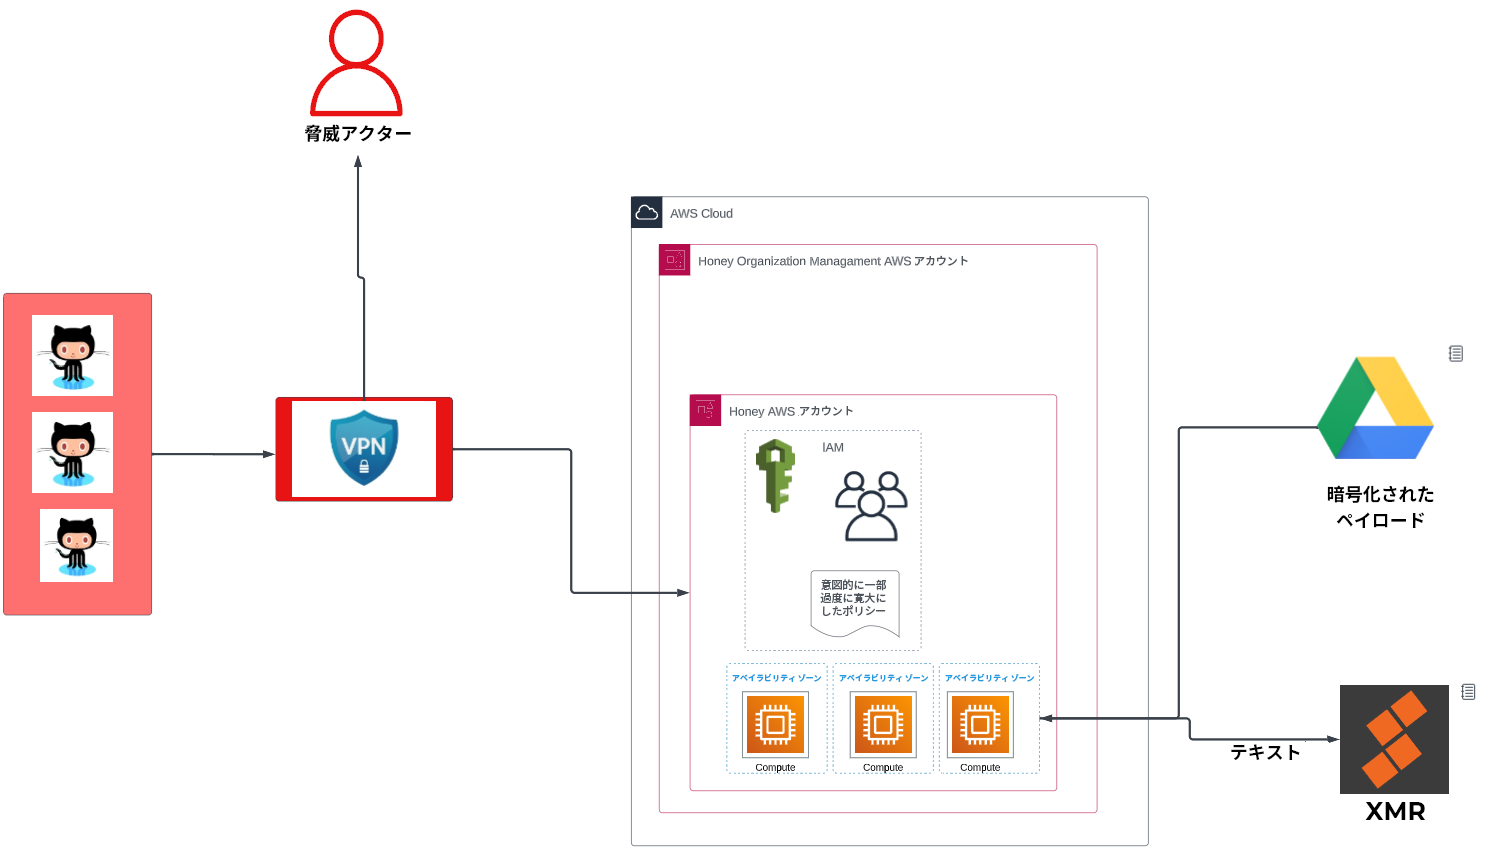 画像 2 は、オペレーション CloudKeys アーキテクチャ図です。3 つの GitHub アイコンは VPN を指しています。VPN からの矢印が脅威アクターを指しています。3 つの入れ子になった四角形が、アーキテクチャを表しています。これらの四角形は、外側から AWS Cloud、Honey Organizational Management AWS Account、Honey AWS Account の順です。Honey AWS Account 内には、IAM と Designed Policy のエリアと、その下の 3 つの Avaiability Zone の Compute のエリアが表示されています。Availability Zone の 1 つに対して矢印が伸びています。双方向矢印が XMR との間に表示され、矢印には「Text」と表示されています。Google Drive アイコンの下には「Encrypted Payload」という説明があり、ここから同じ Availability Zone の 1 つに矢印が伸びています。 